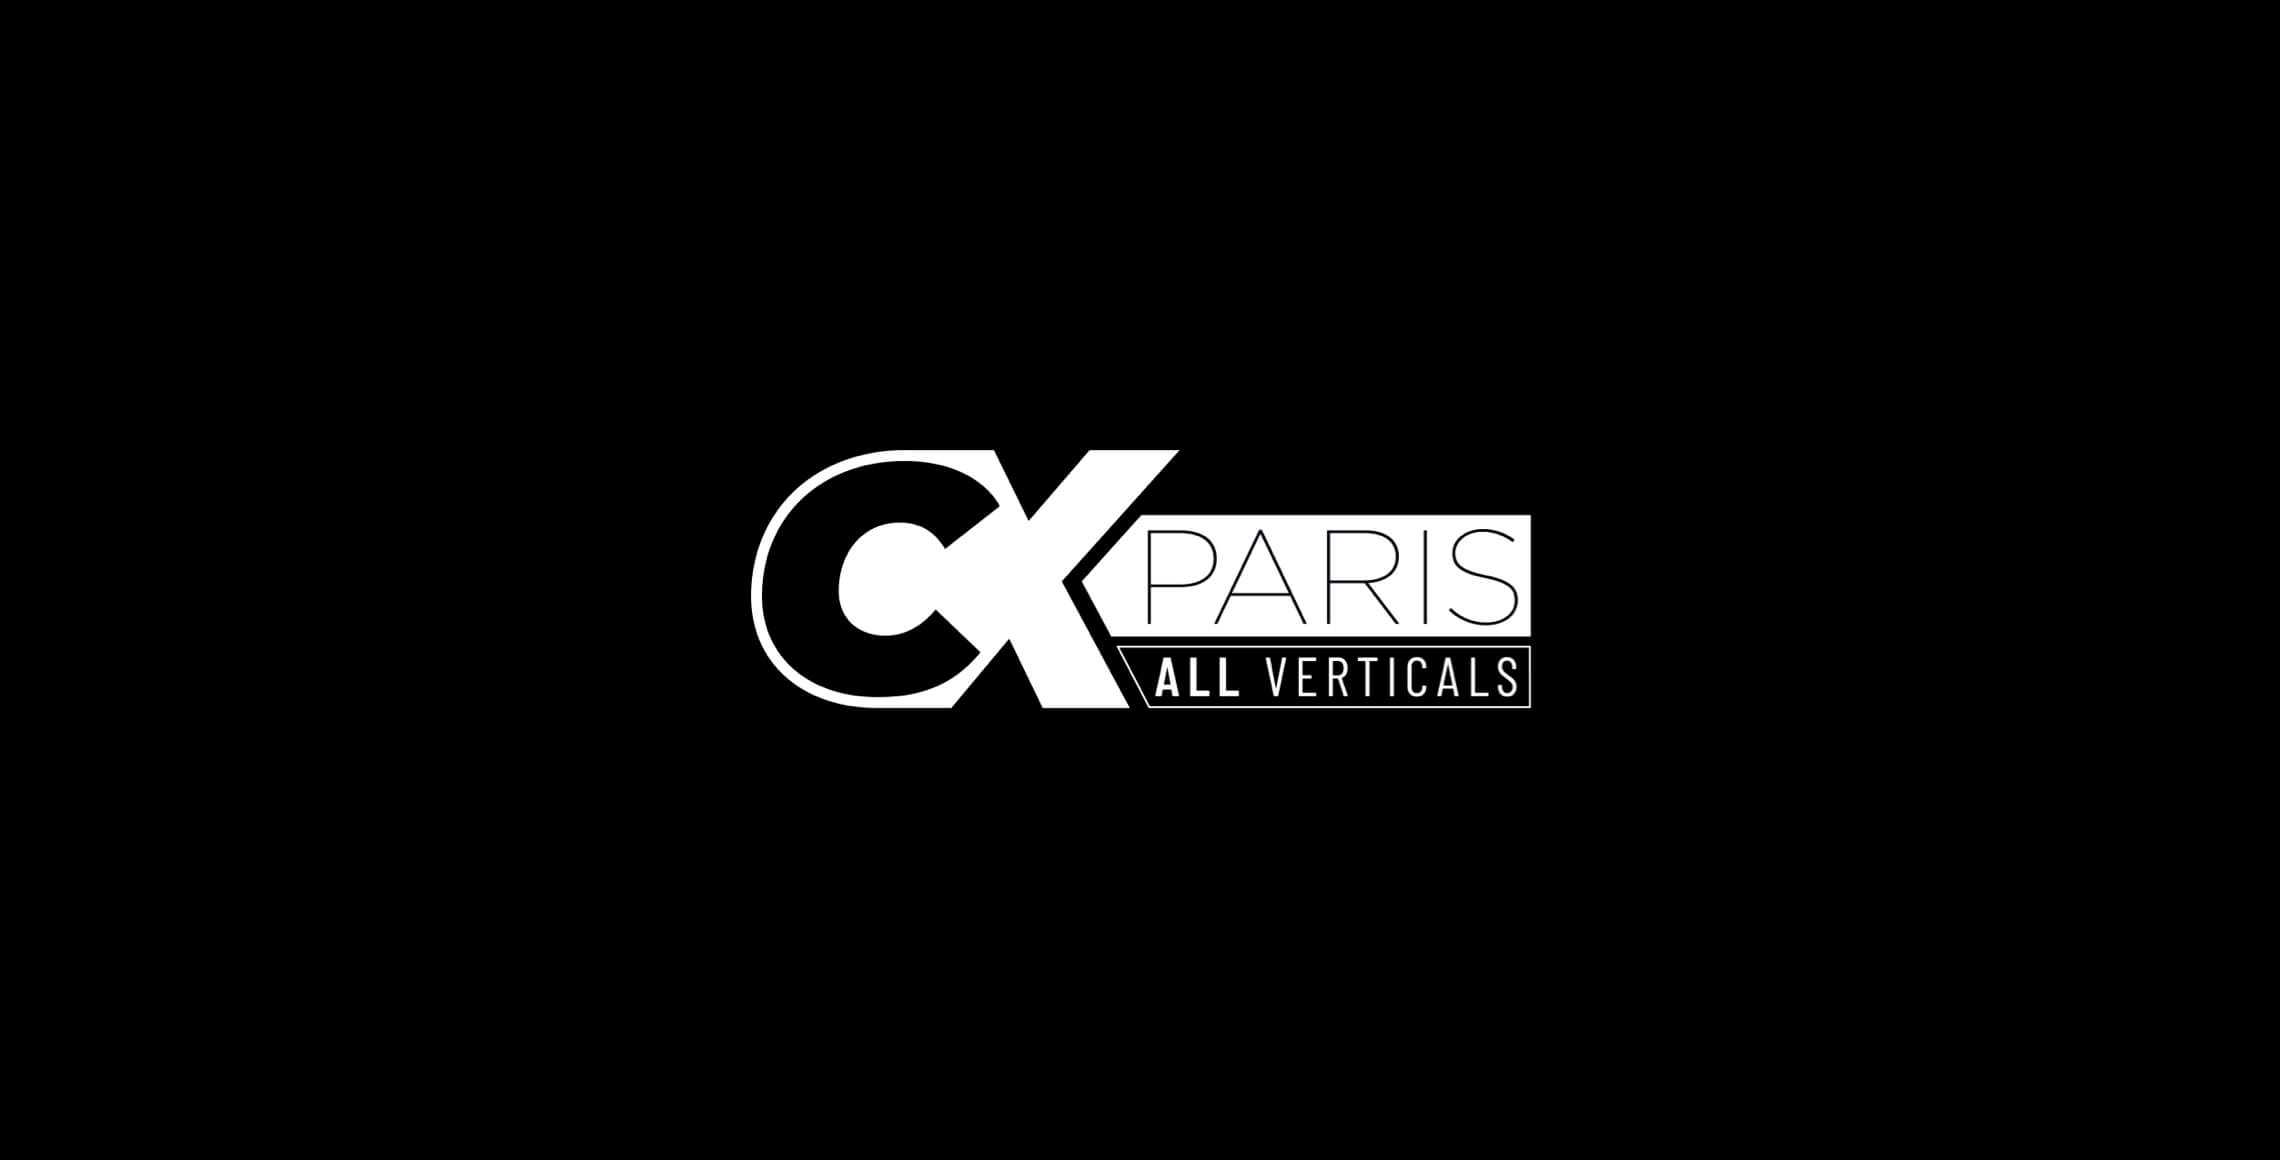 Cx Paris 2022 Event All Verticals